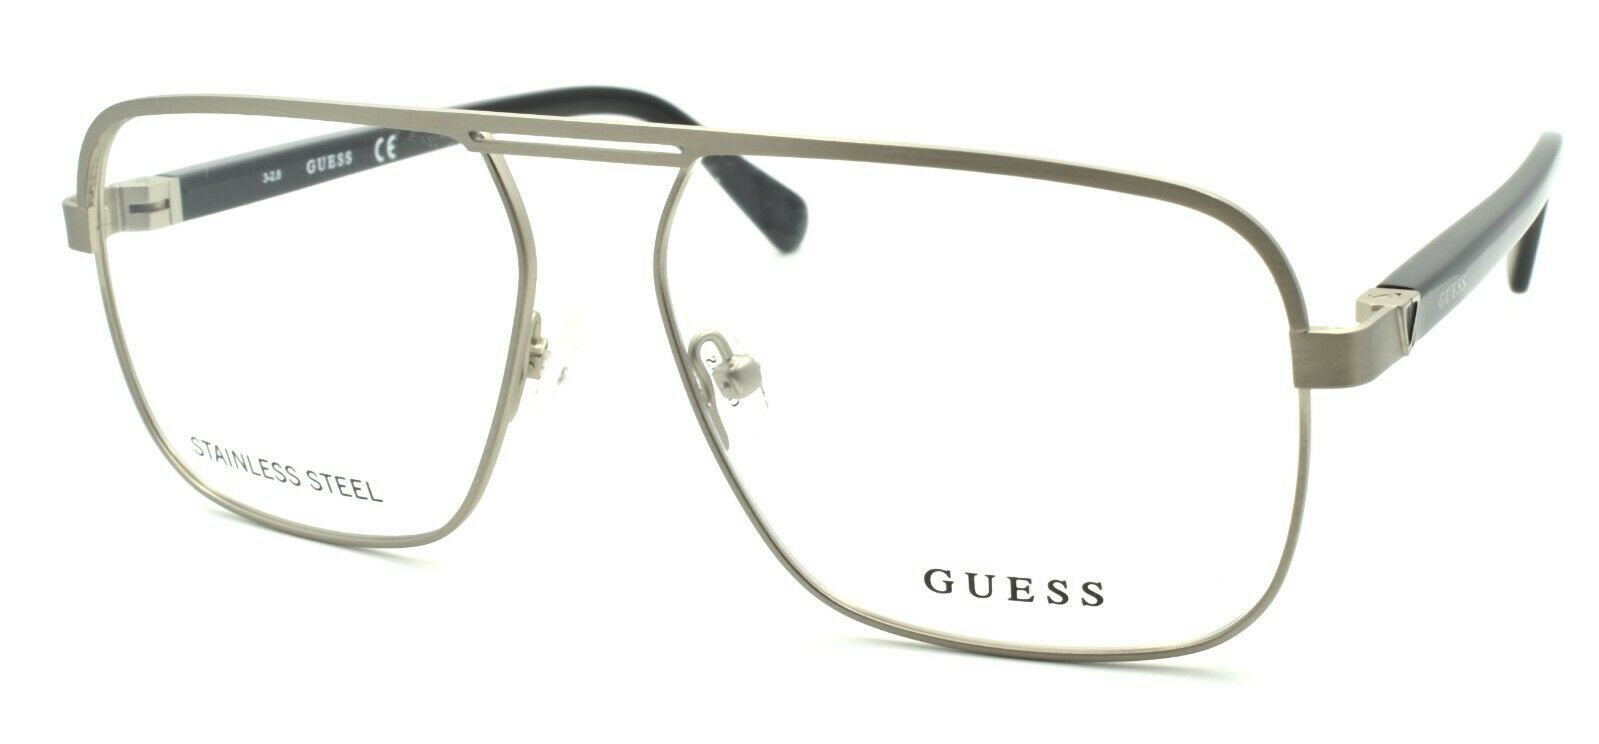 1-GUESS GU1966 010 Men's Eyeglasses Frames Aviator 57-15-145 Light Nickeltin-889214033888-IKSpecs